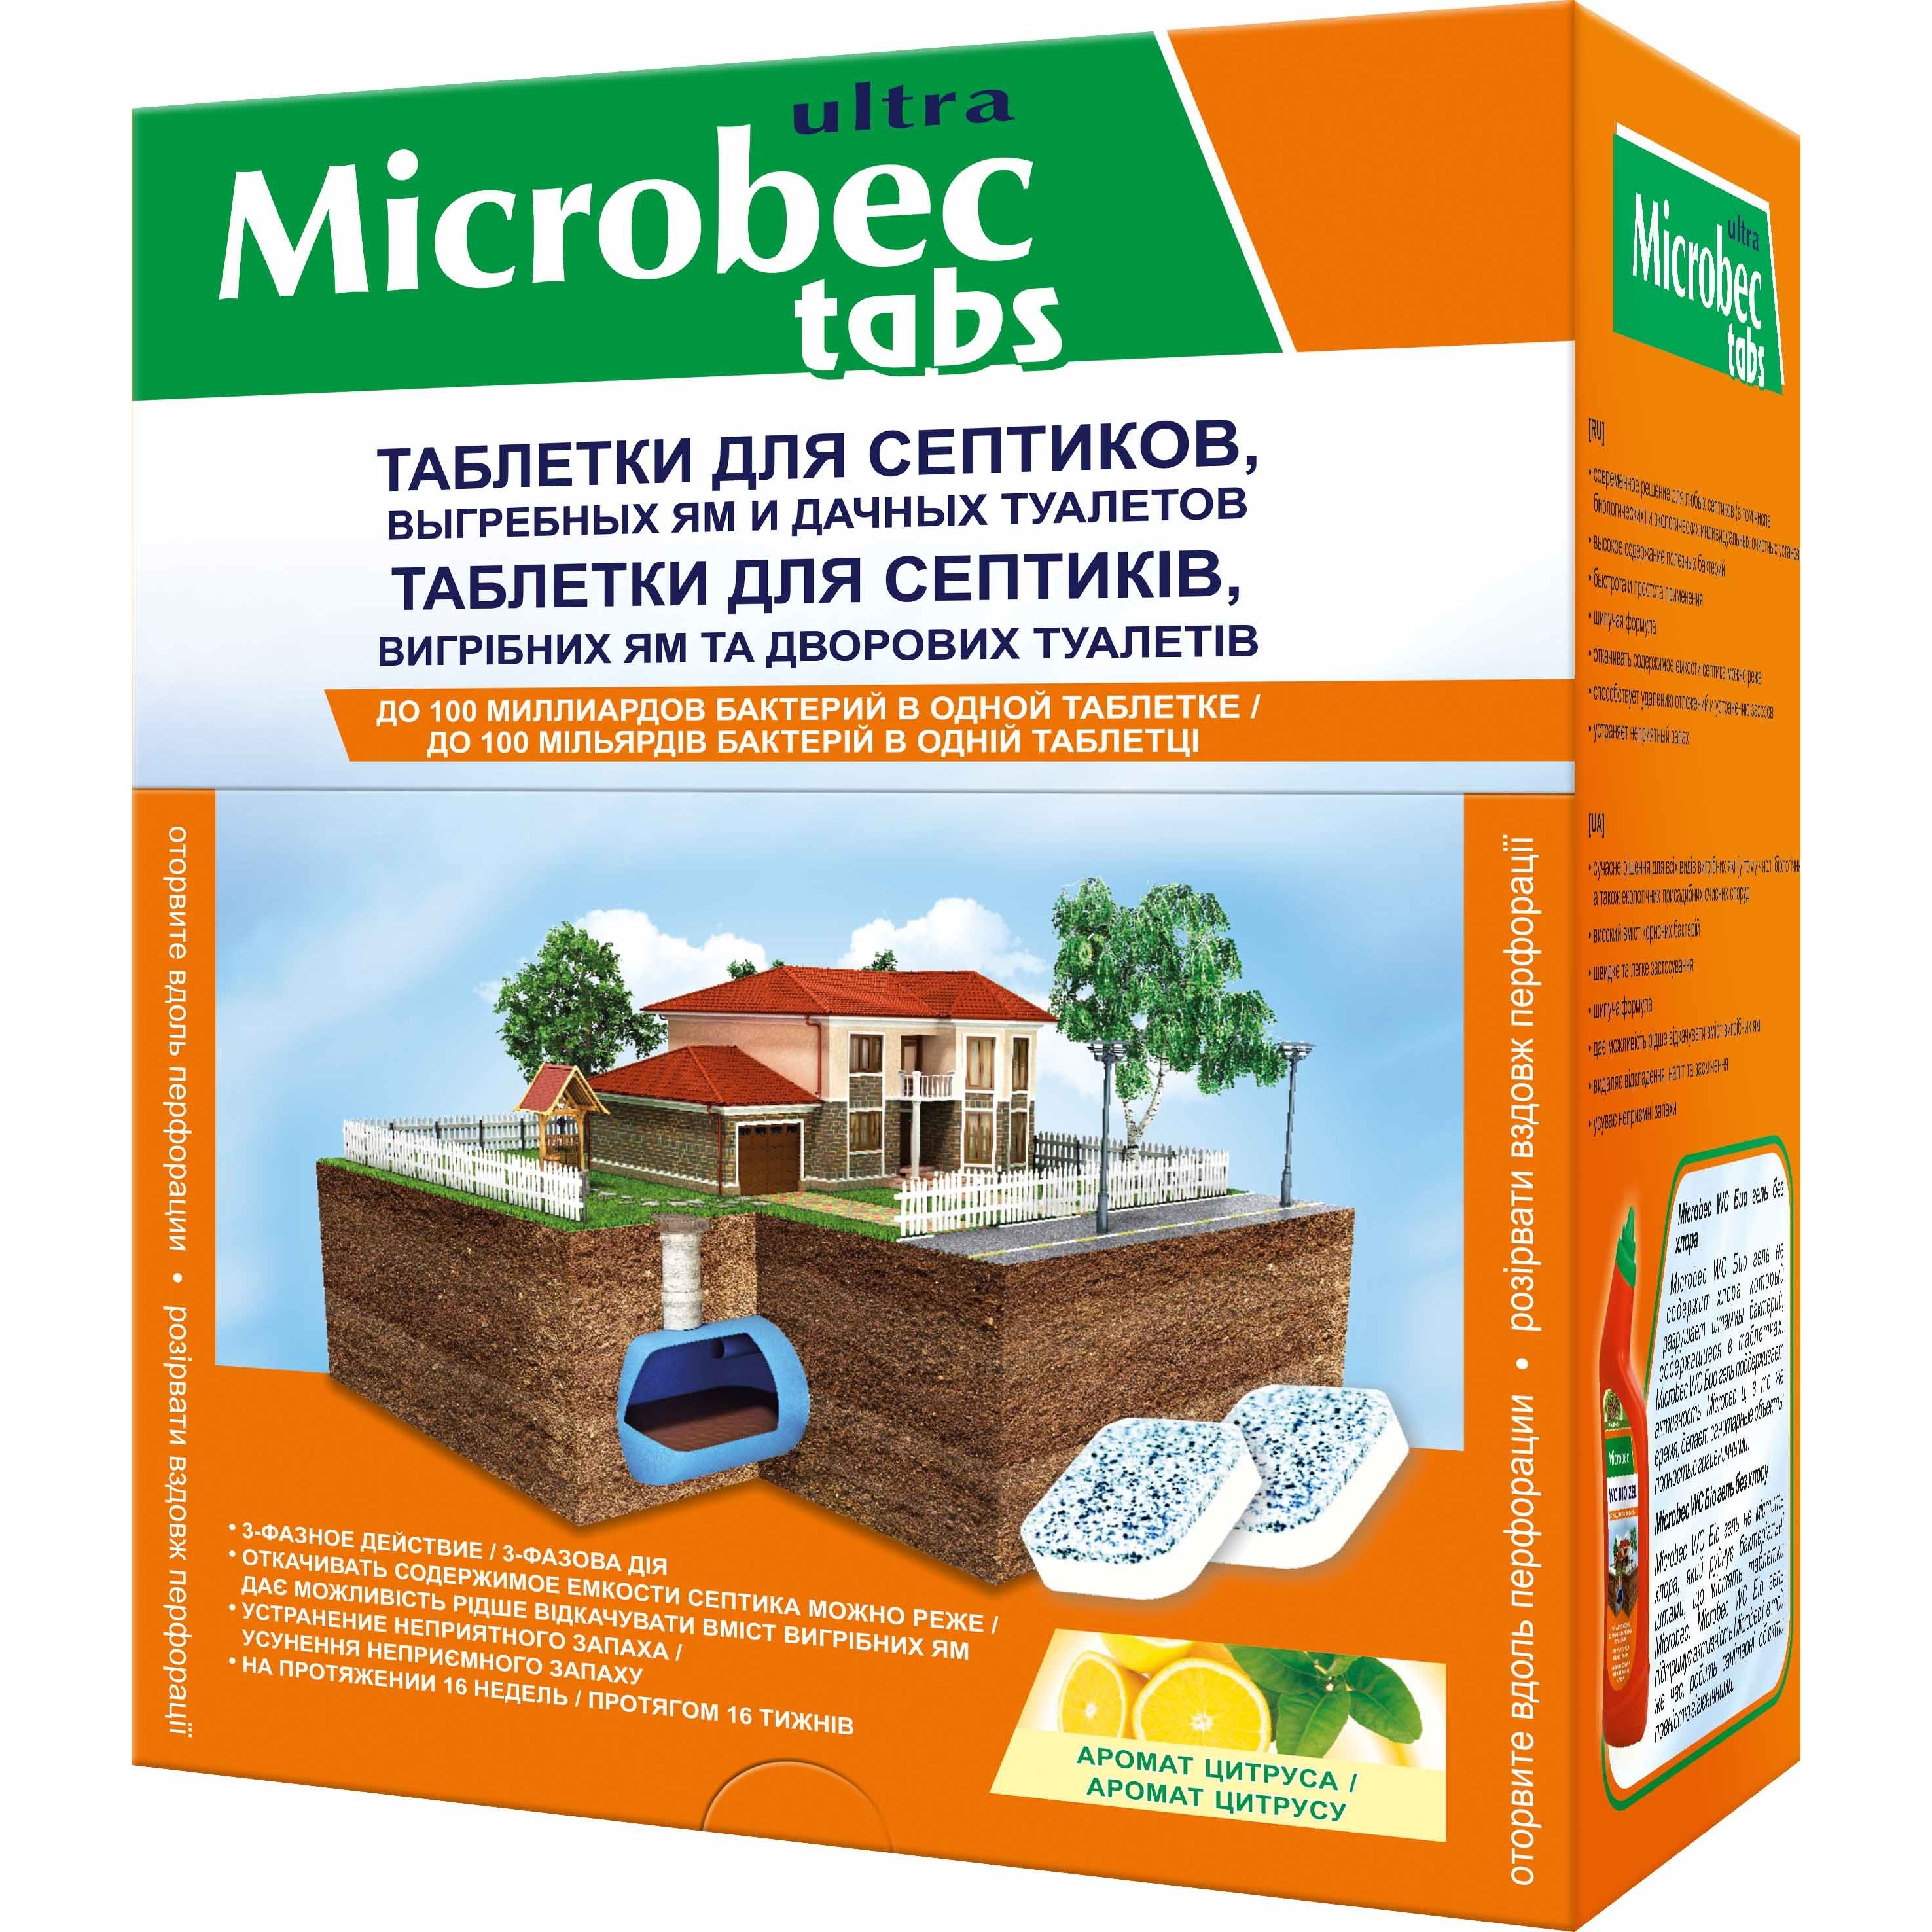 Засіб для септиків, вигрібних ям та дворових туалетів Bros Microbec tabs 1 таблетка 20 г - фото 1